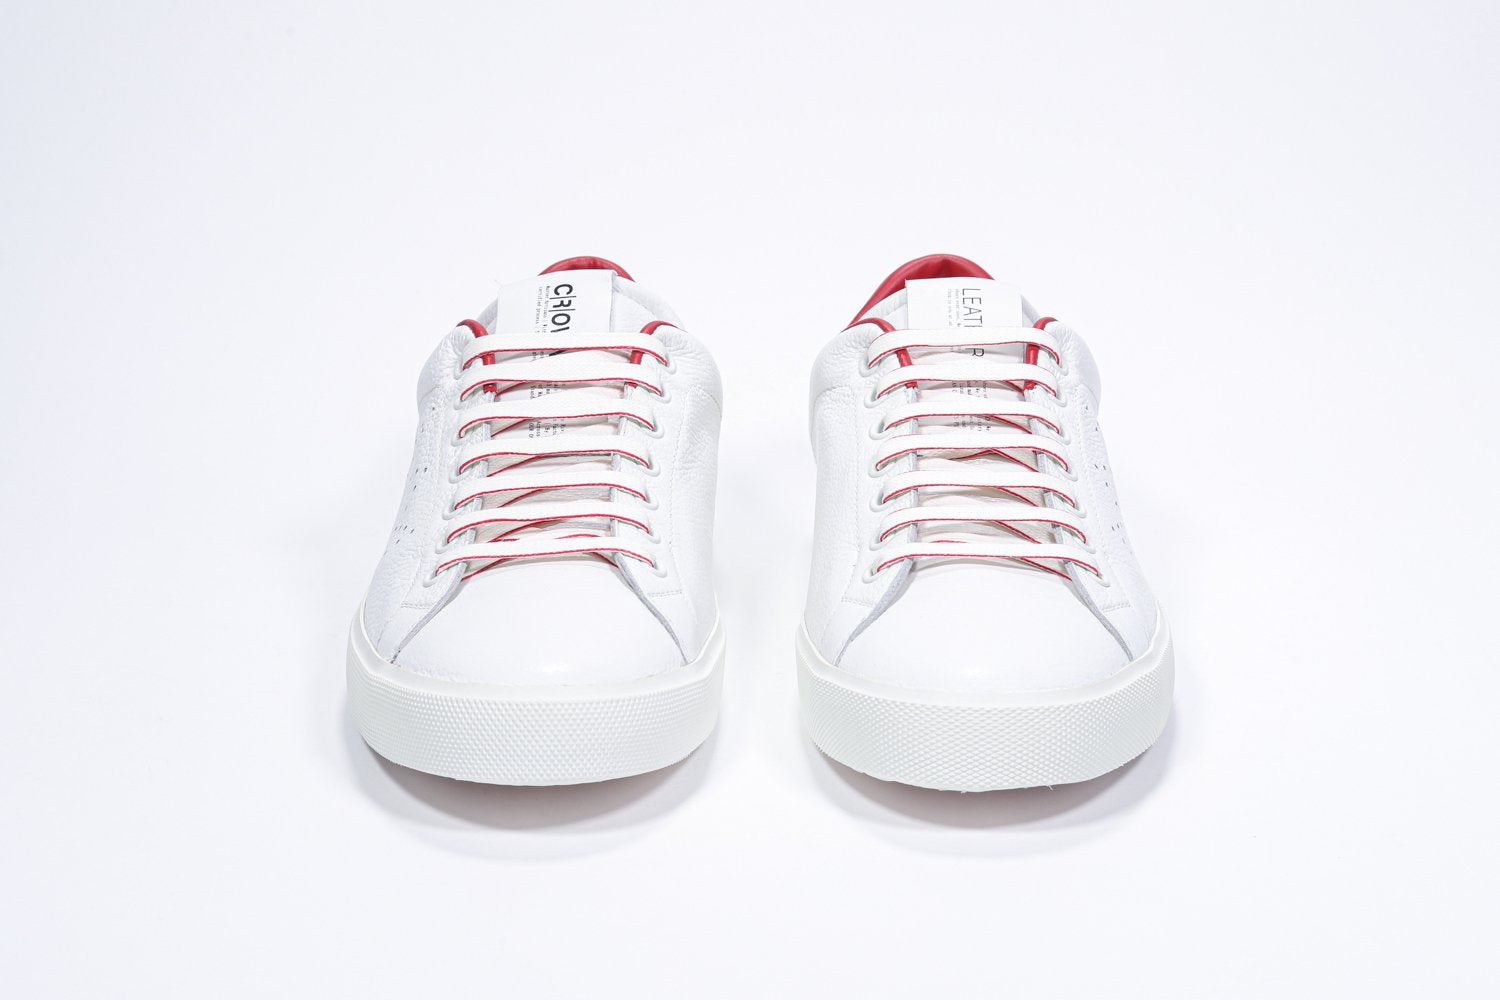 Vue de face de la chaussure blanche sneaker avec des détails rouges et le logo perforé de la couronne sur la tige. Tige en cuir et semelle en caoutchouc blanc.